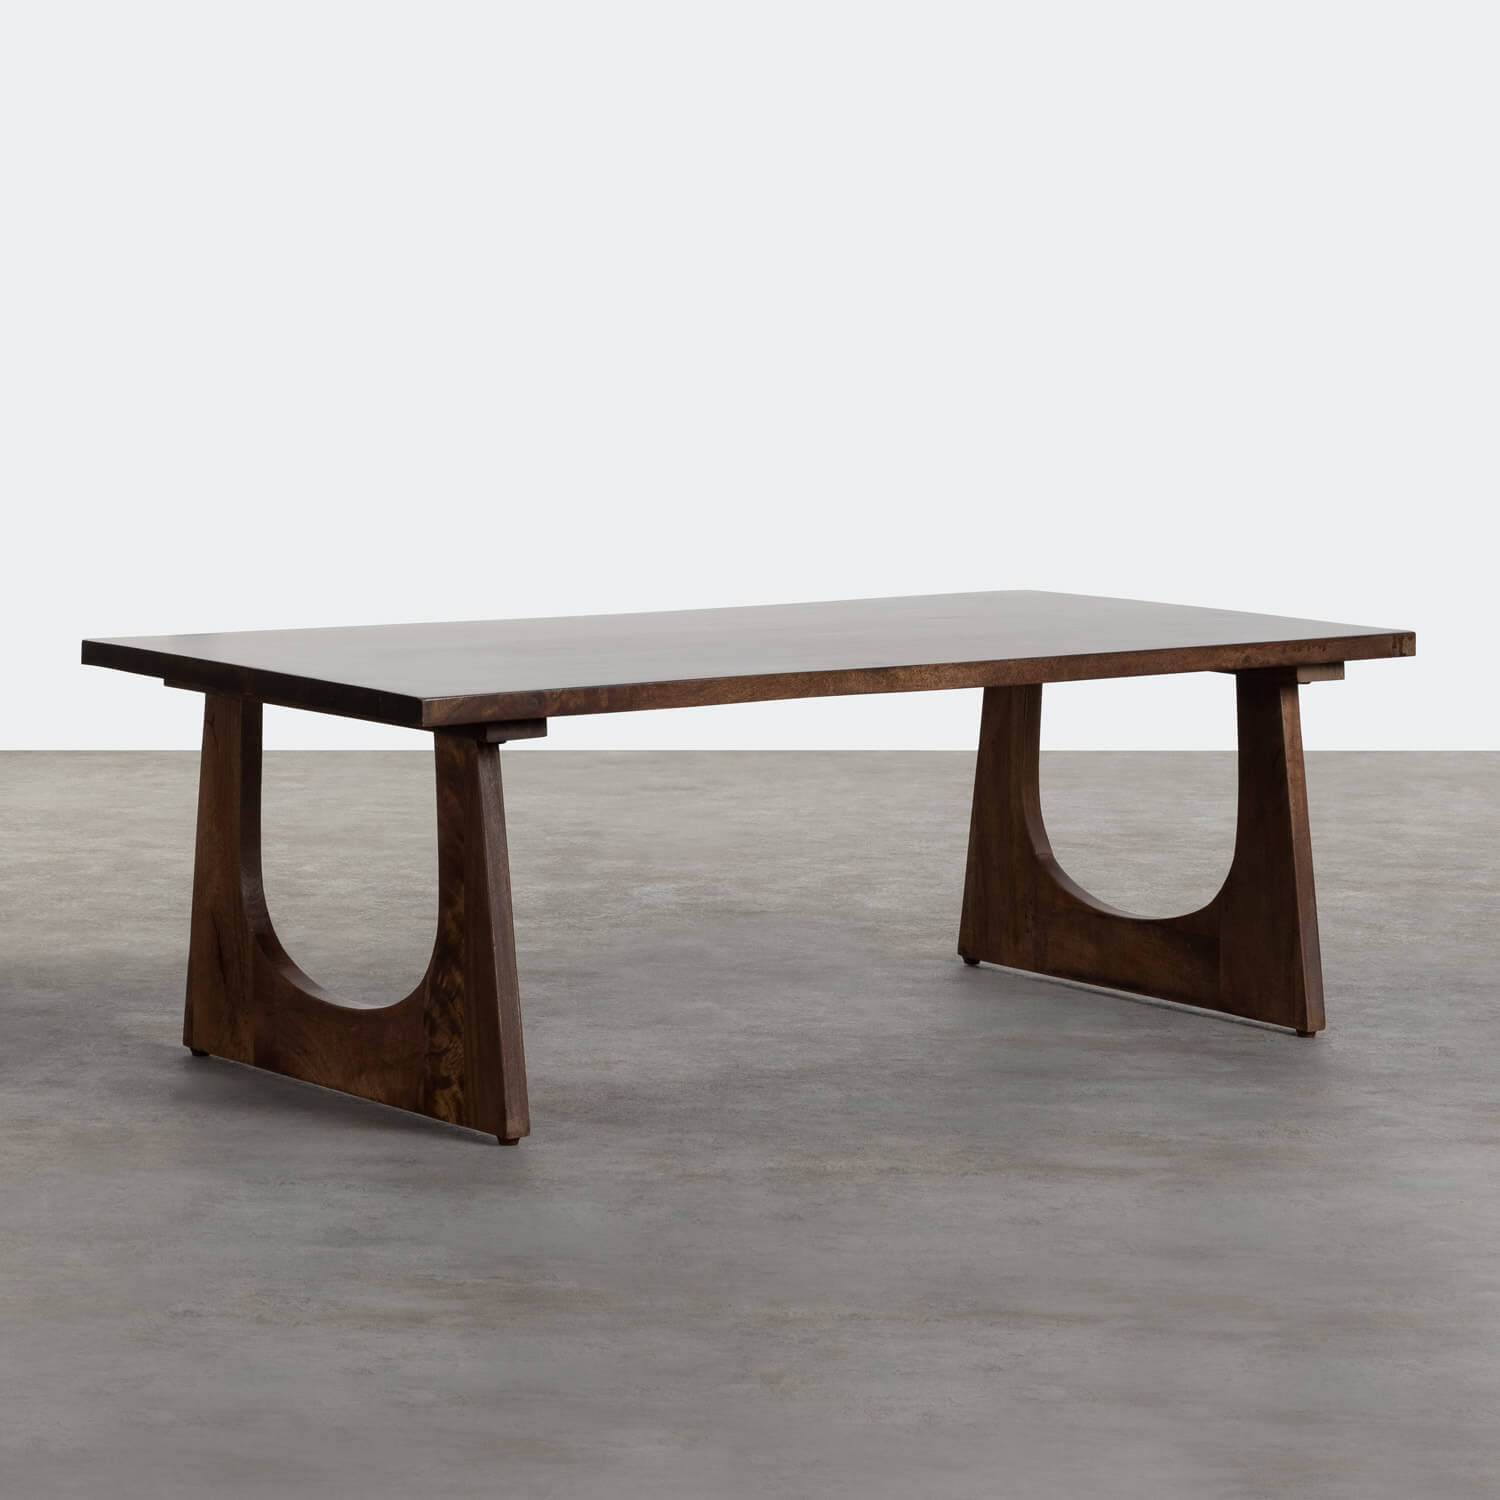 Tavolino da Caffé Rettangolare in Legno (120x61 cm) Ciri., immagine della galleria 1